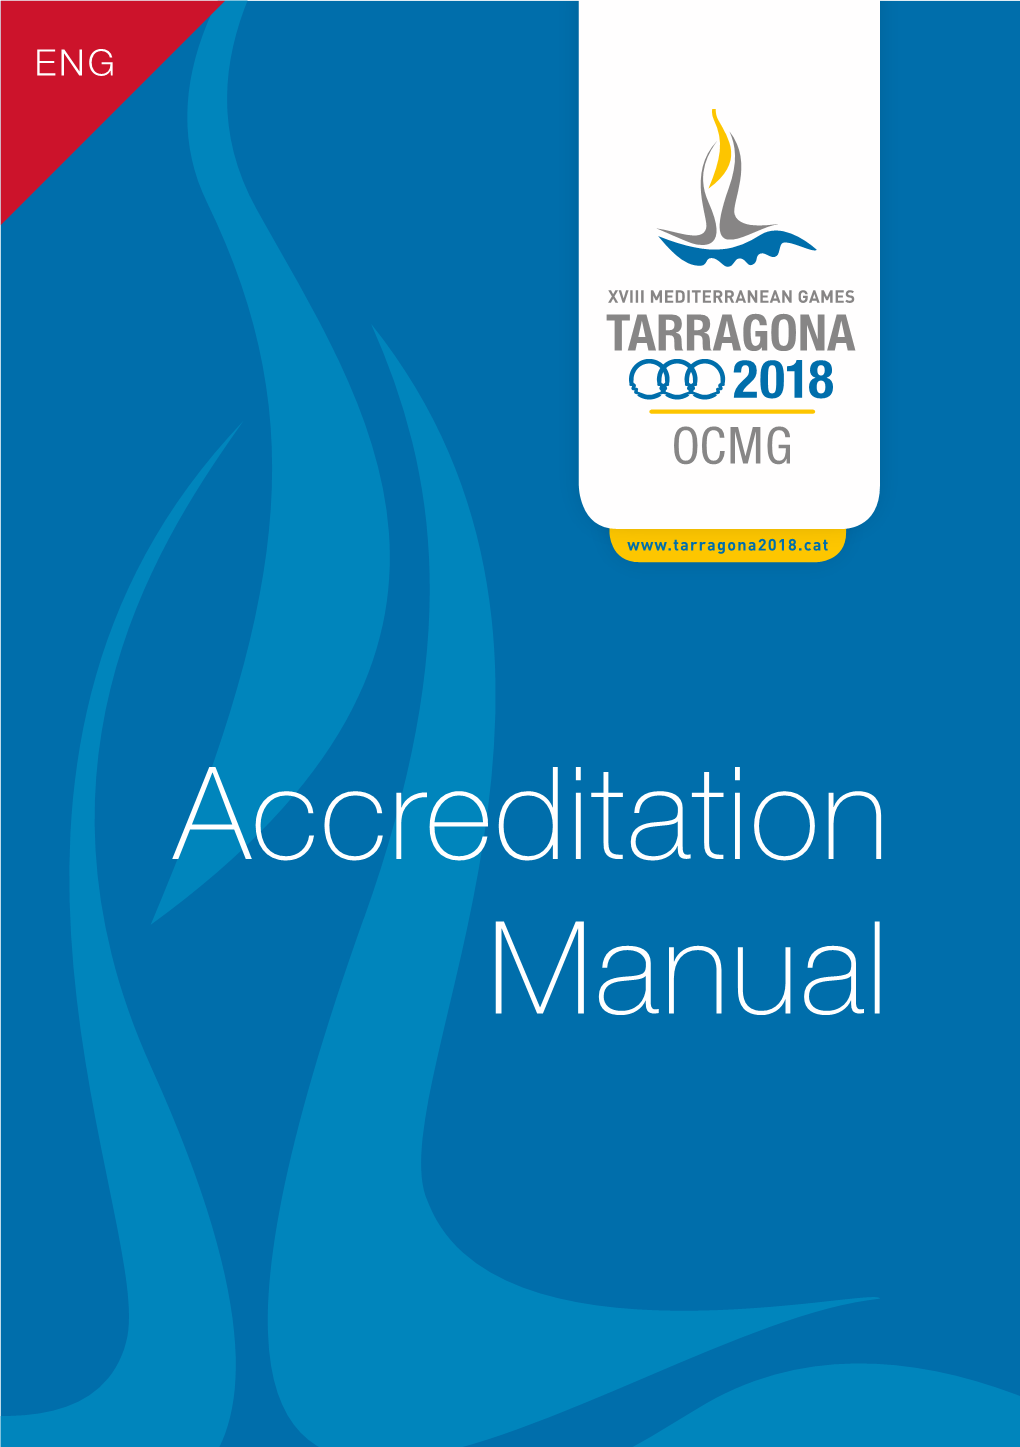 Accreditation Manual Publisher: OCMG Tarragona 2018